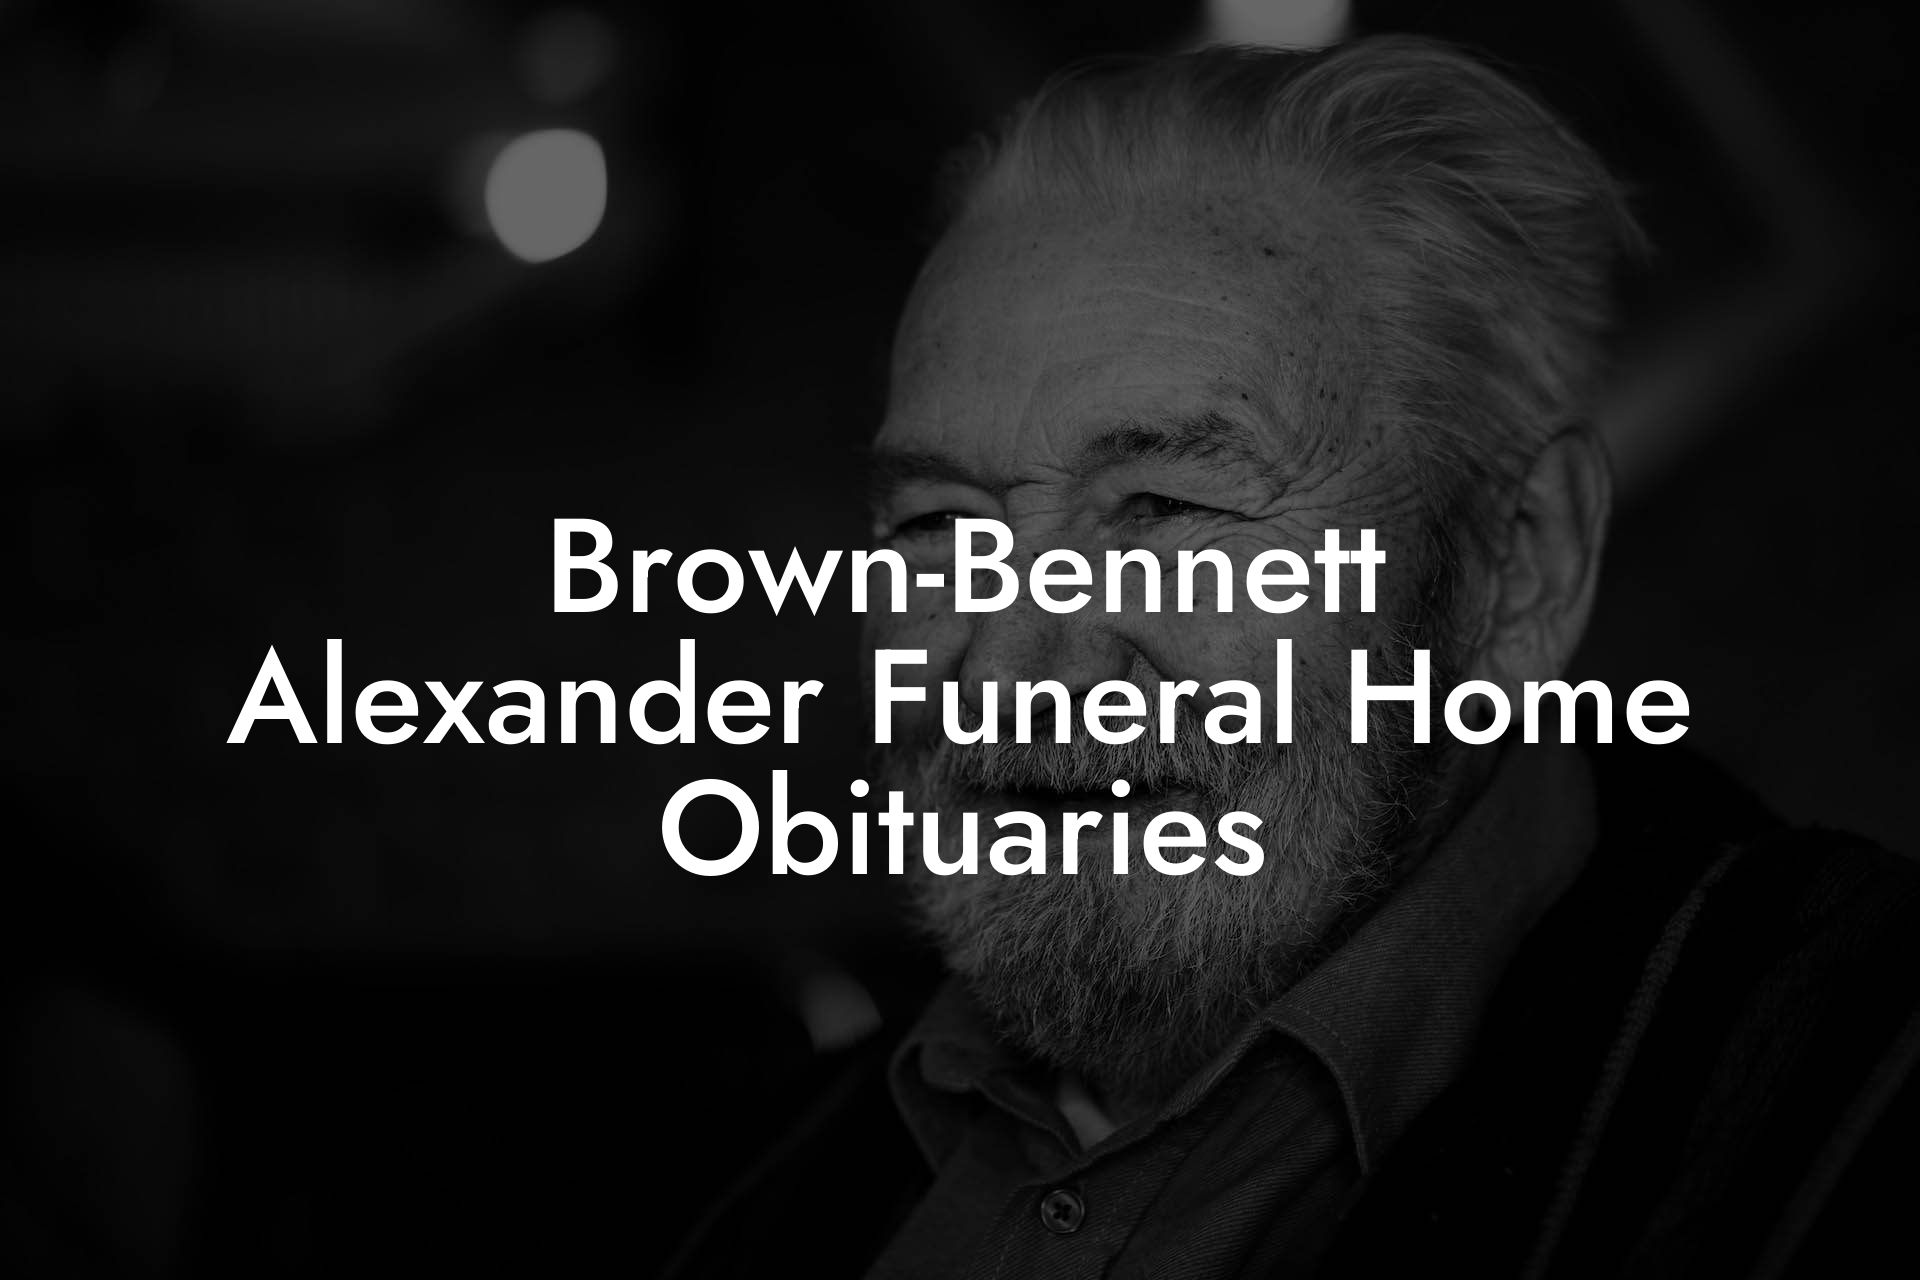 Brown-Bennett Alexander Funeral Home Obituaries